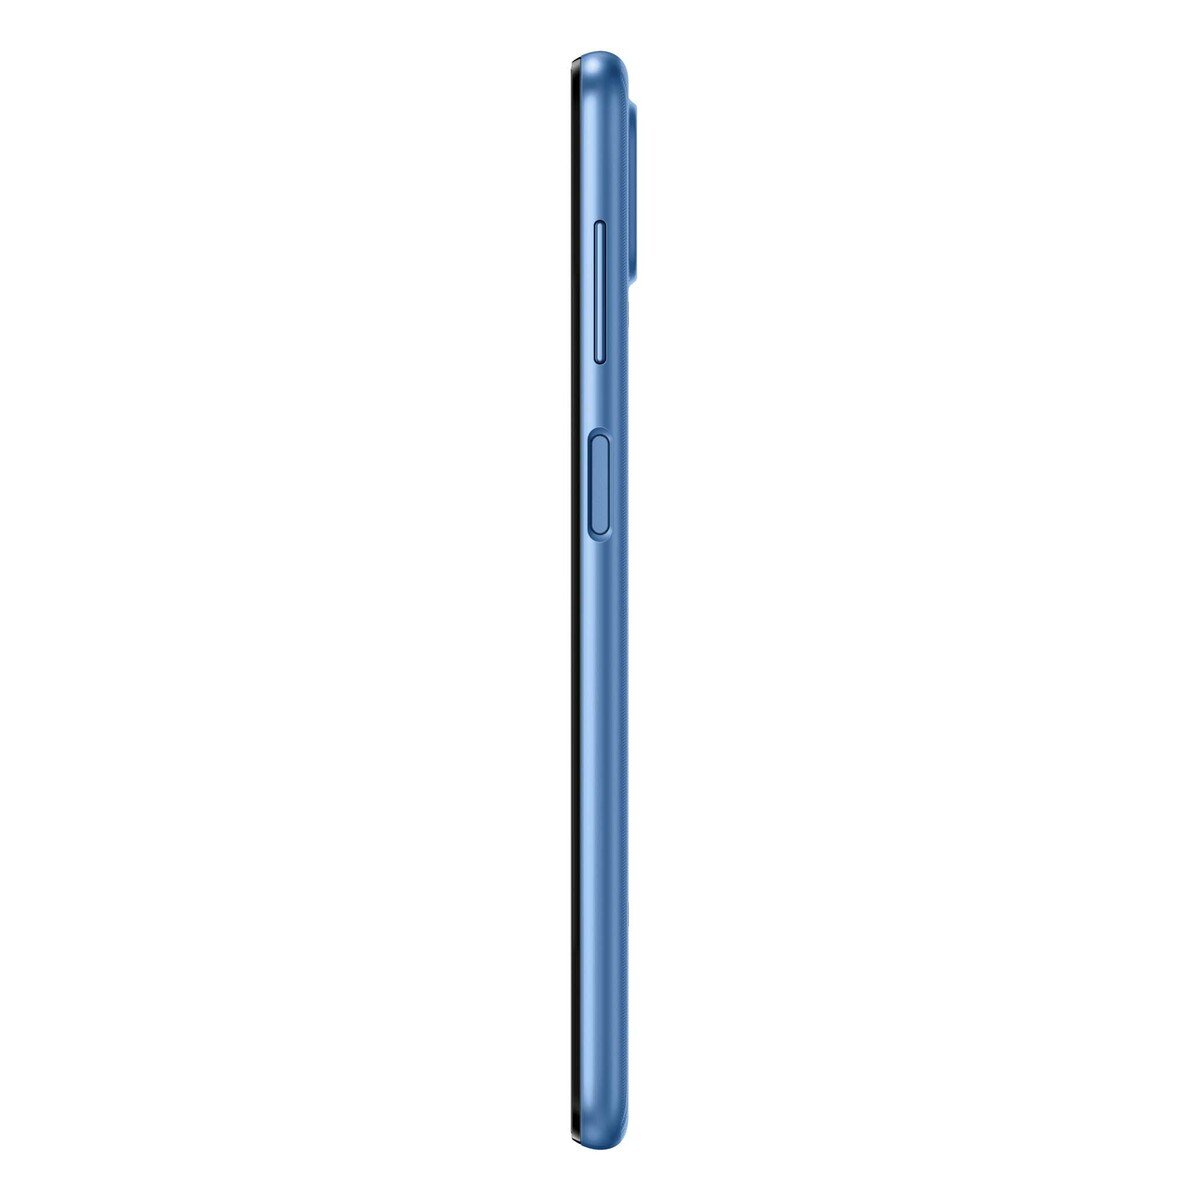 Samsung Galaxy M22 SM-M225FLBDMEA 64GB Blue